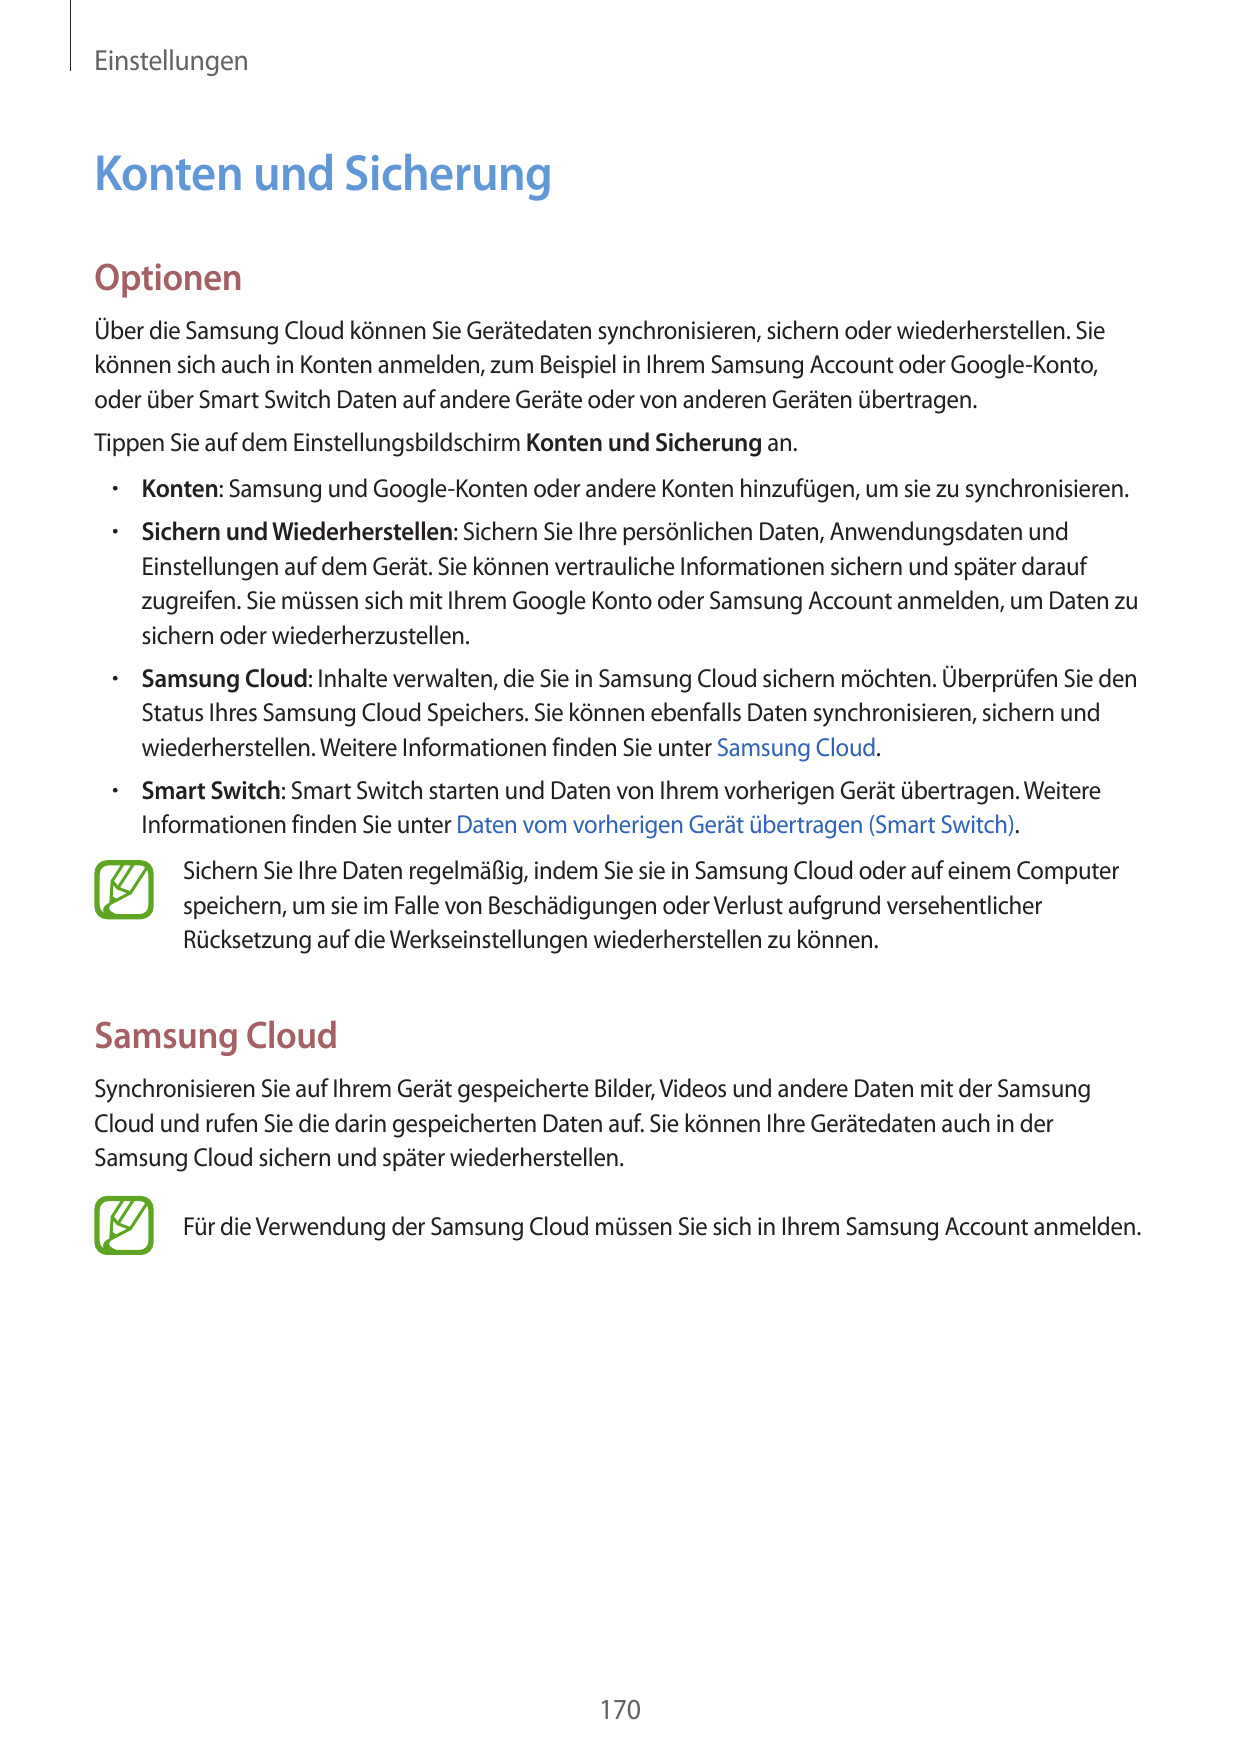 EinstellungenKonten und SicherungOptionenÜber die Samsung Cloud können Sie Gerätedaten synchronisieren, sichern oder wiederherst